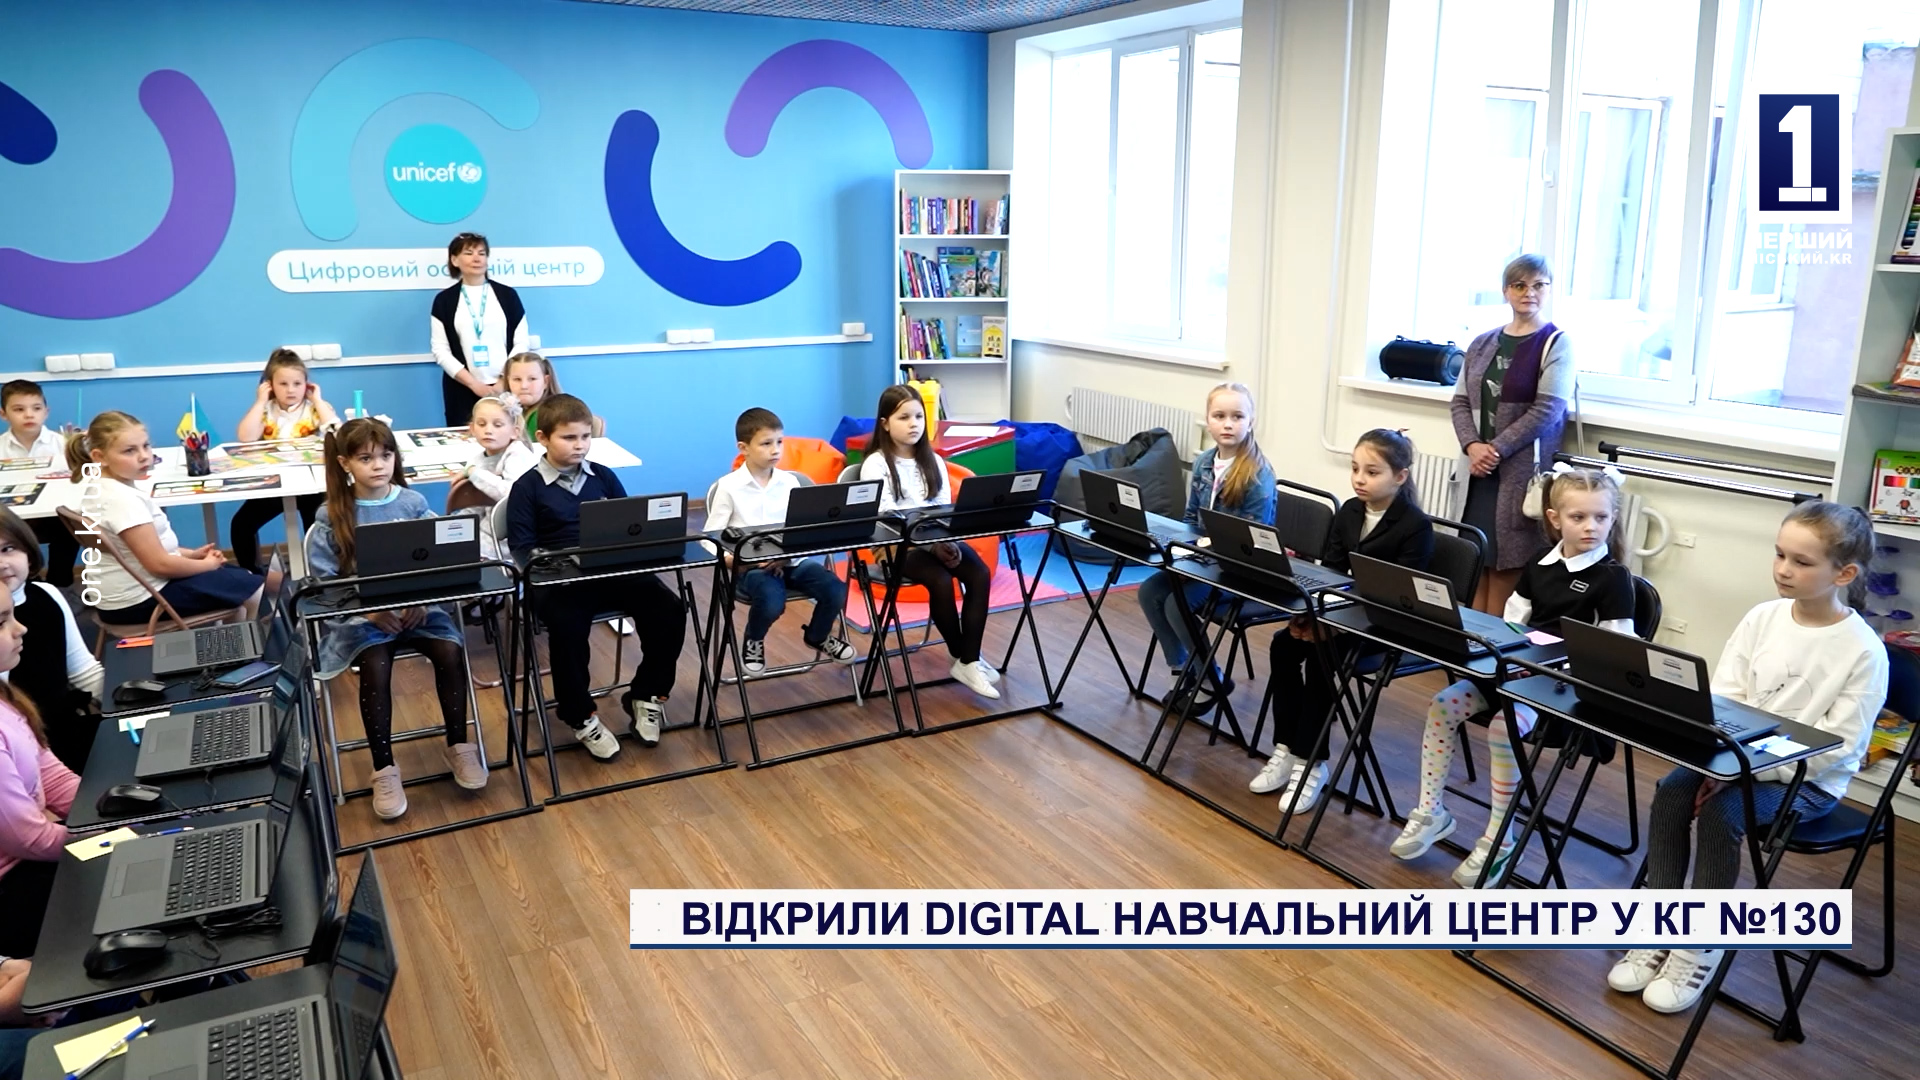 Открыли Digital Learning Center в КГ №130